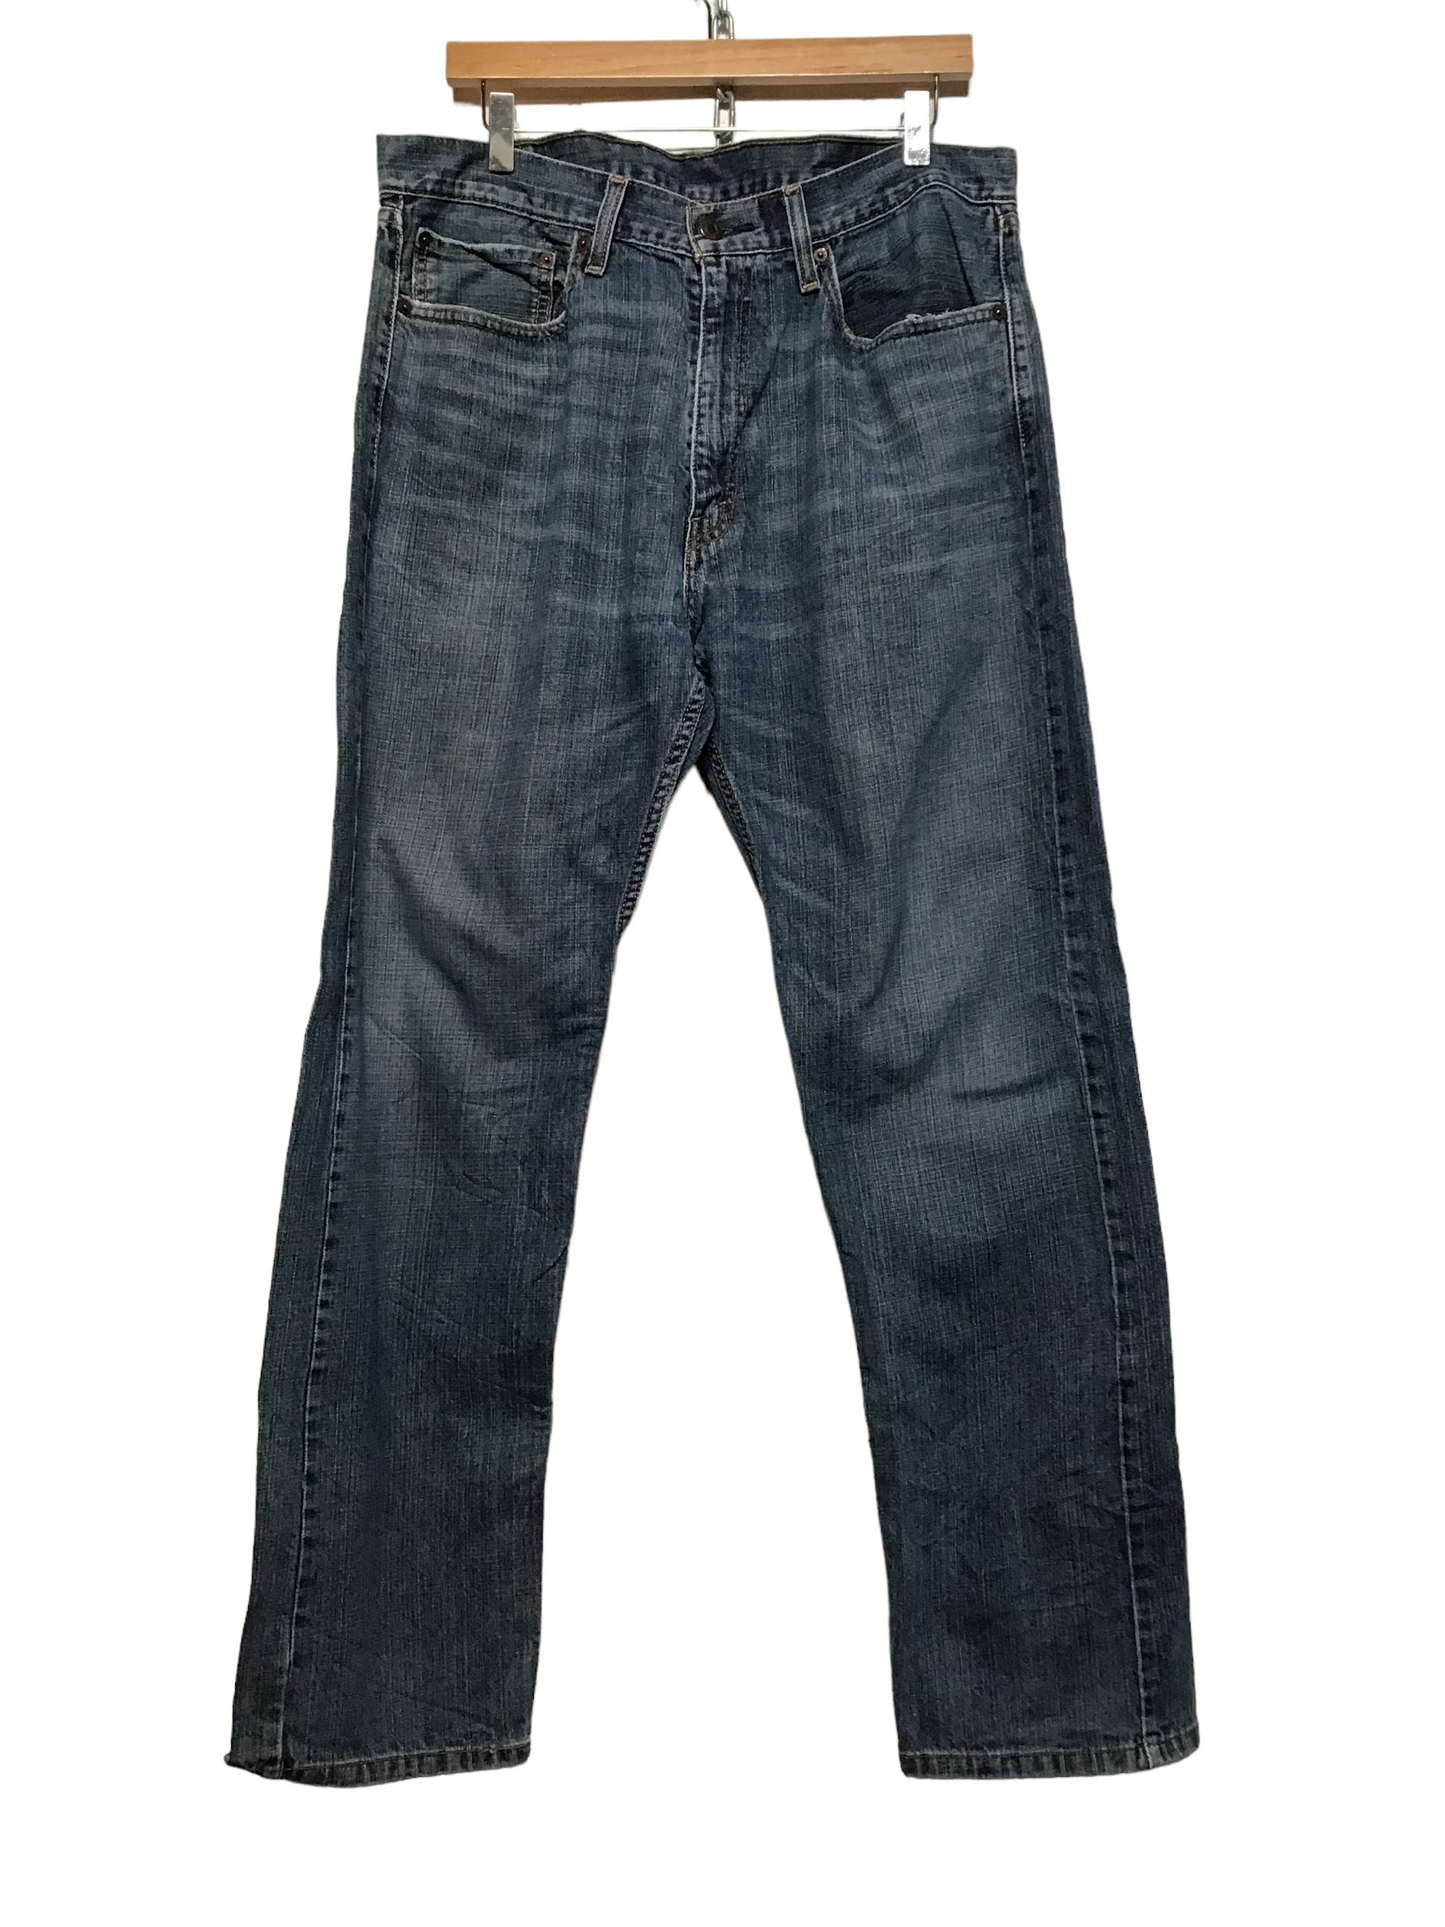 Levi 505 Jeans (36X32)